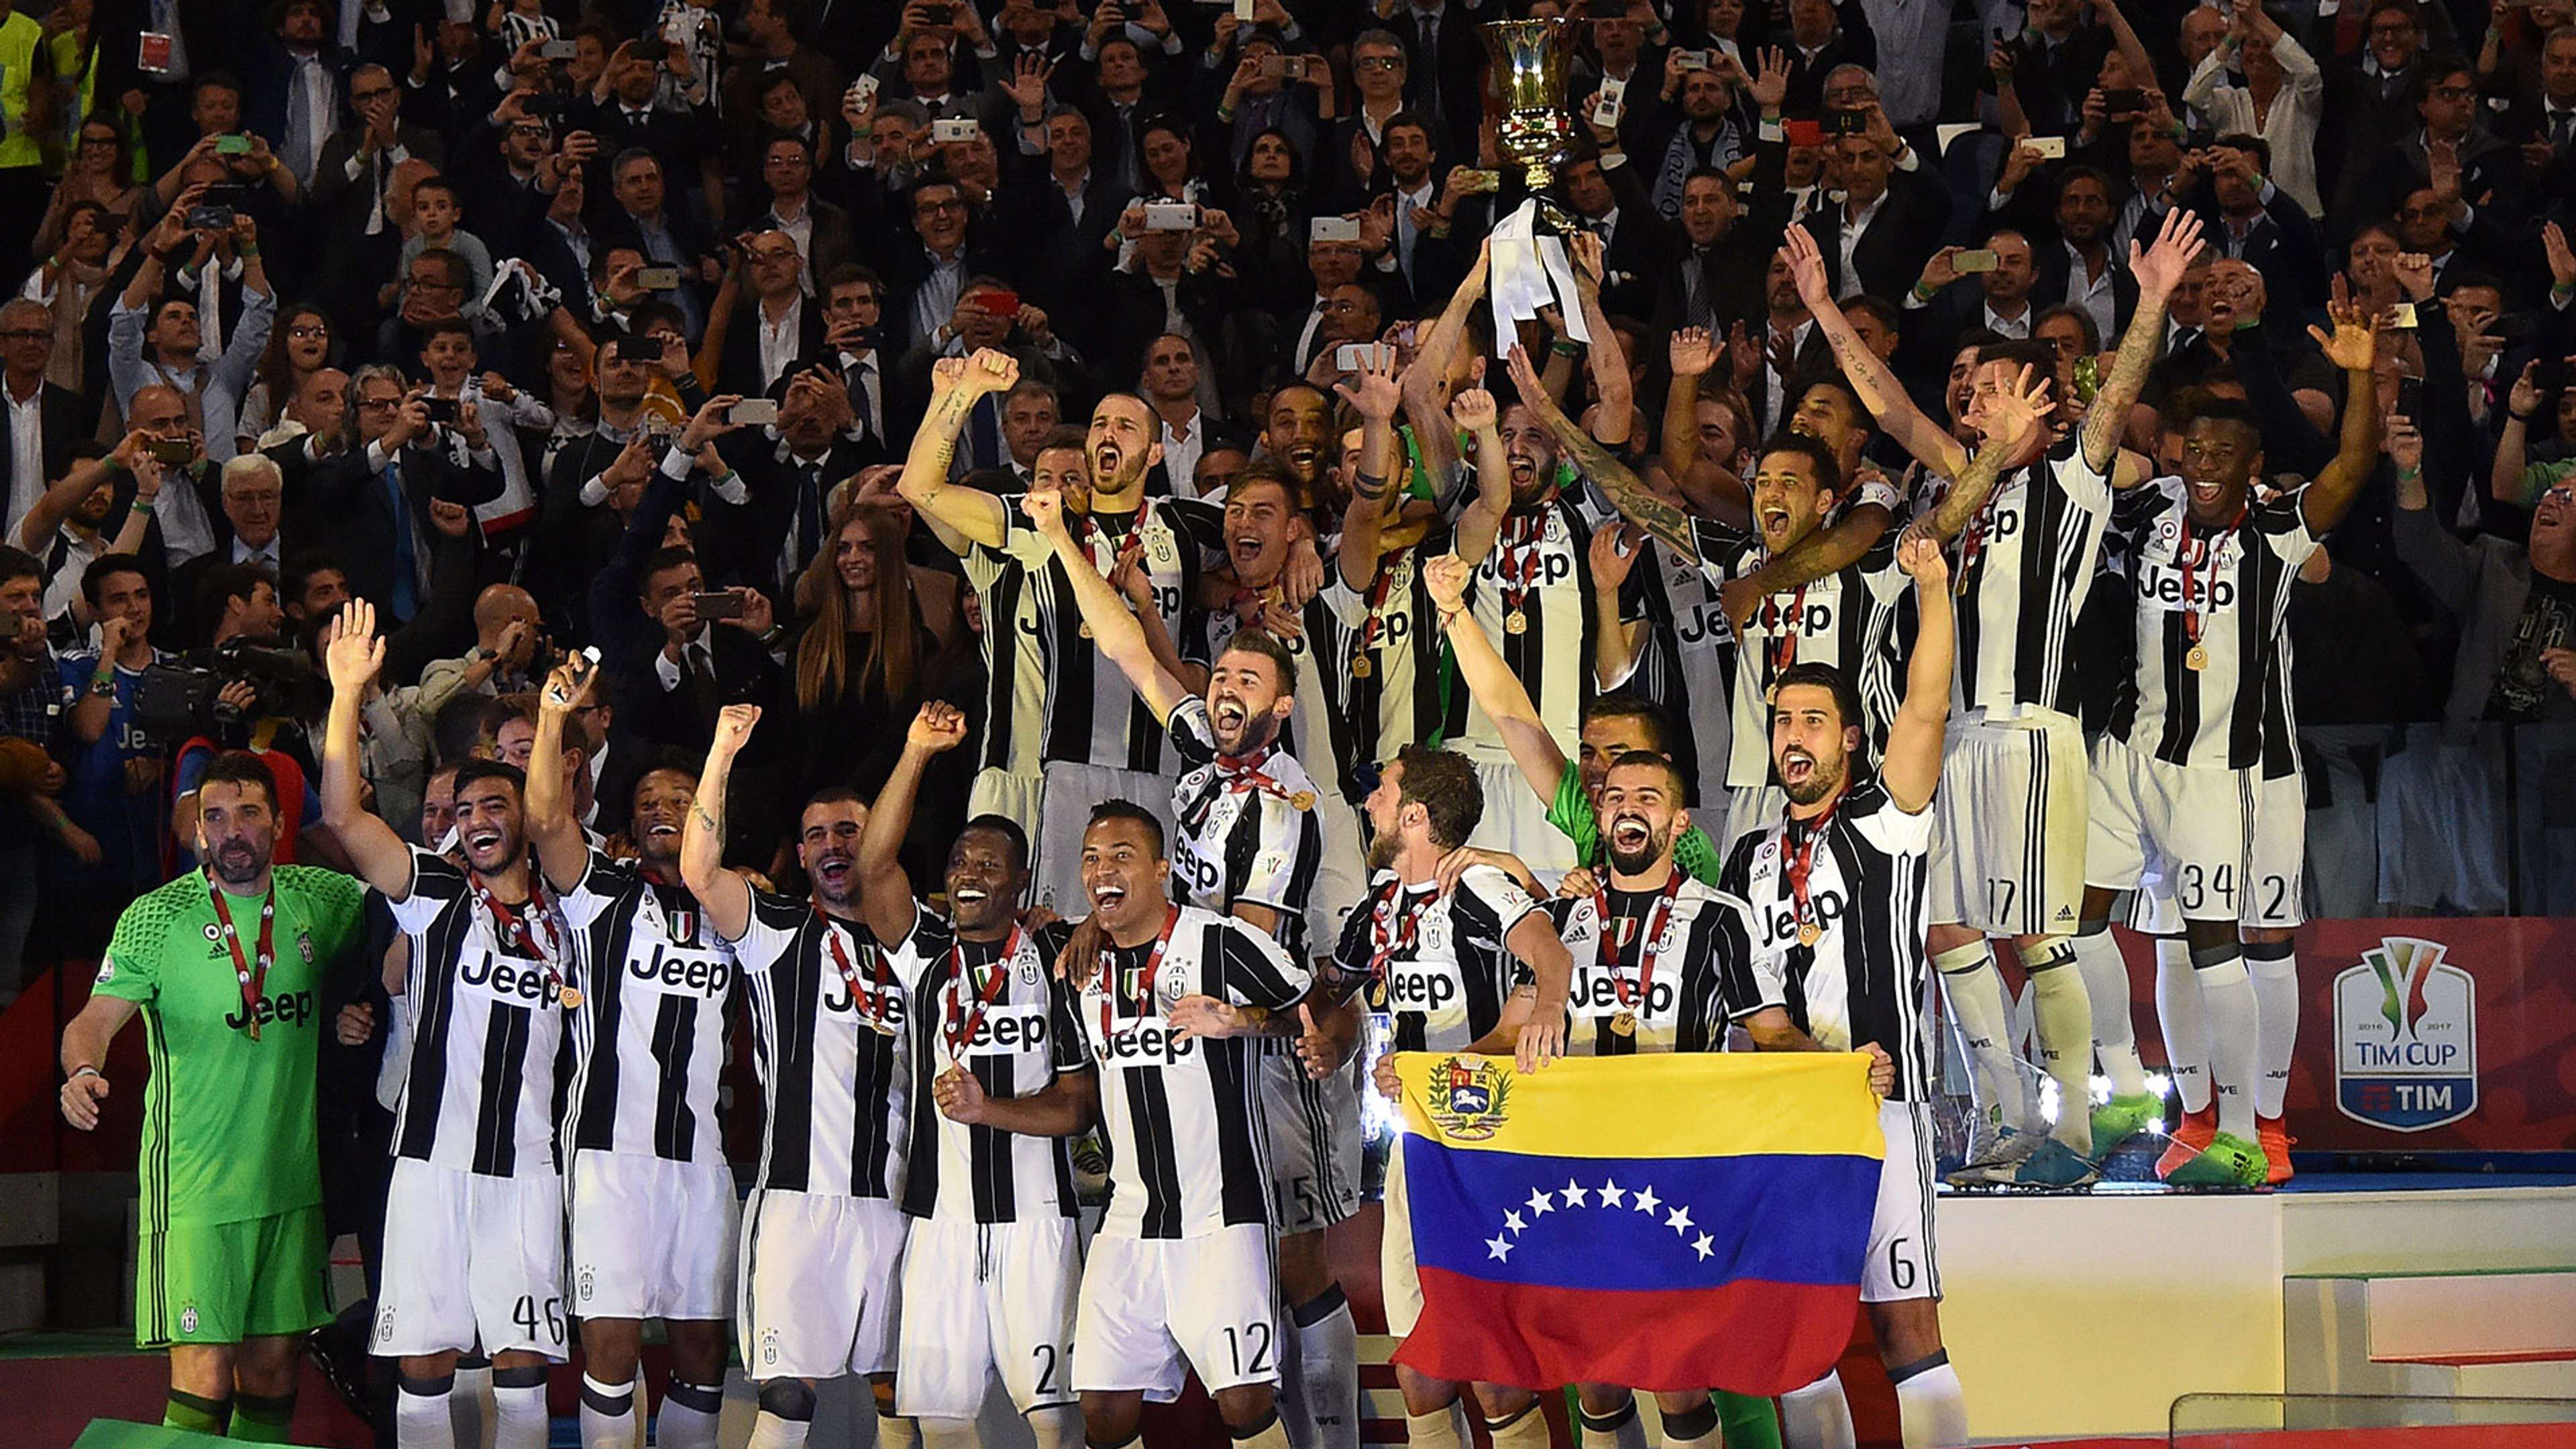 Juventus celebrating Coppa Italia